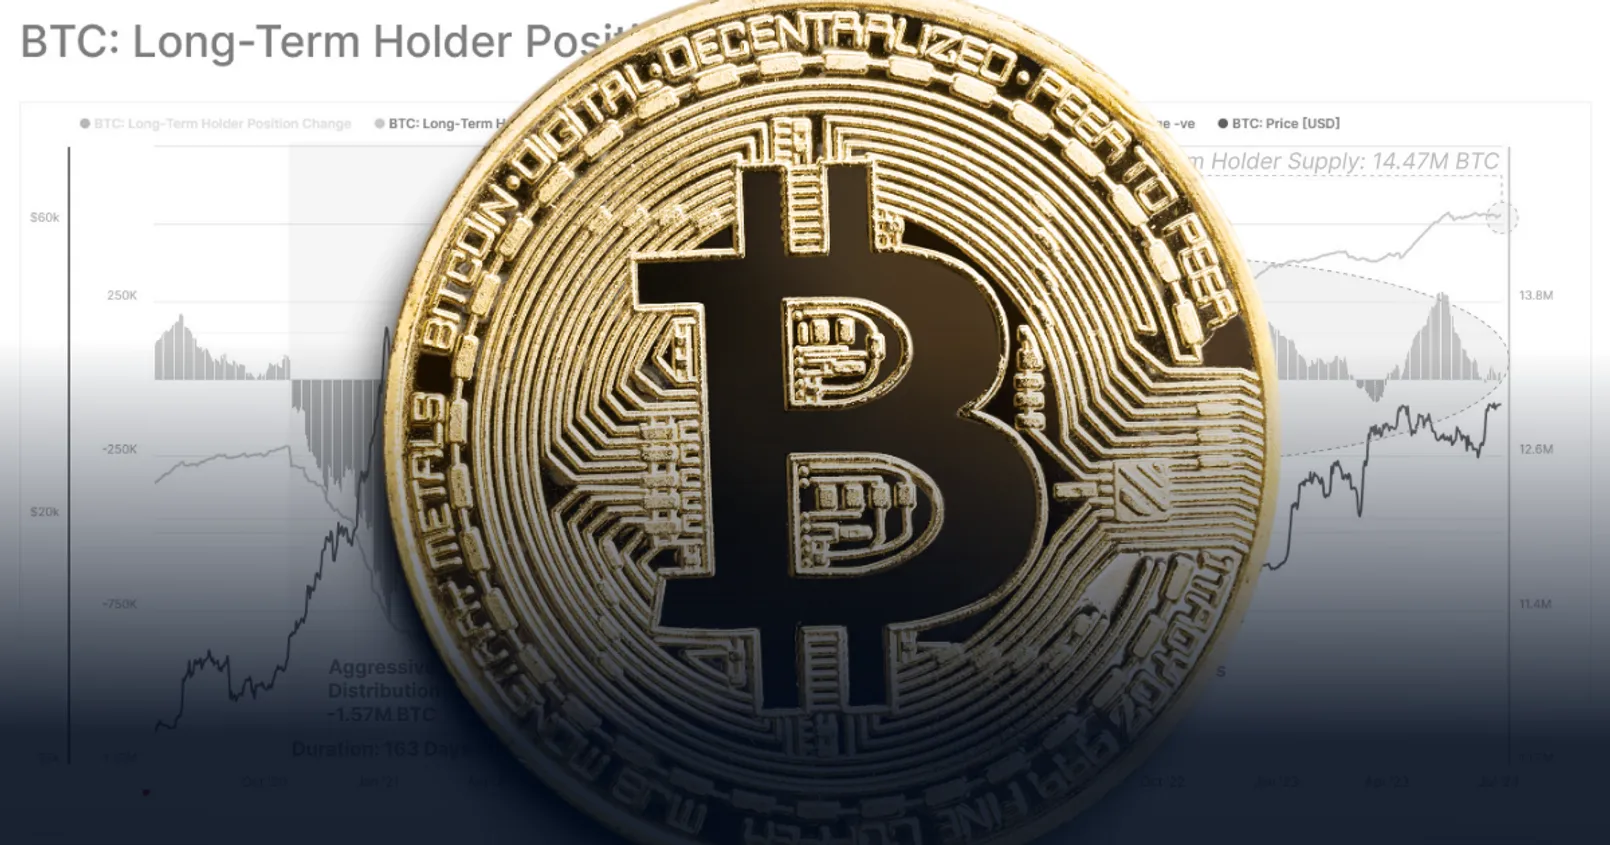 ตั้งแต่เดือนตุลาคม ปี 2021 มี 'long-term holder' ทยอยสะสม Bitcoin เข้ากระเป๋าไปแล้วกว่า 1.01 ล้าน BTC